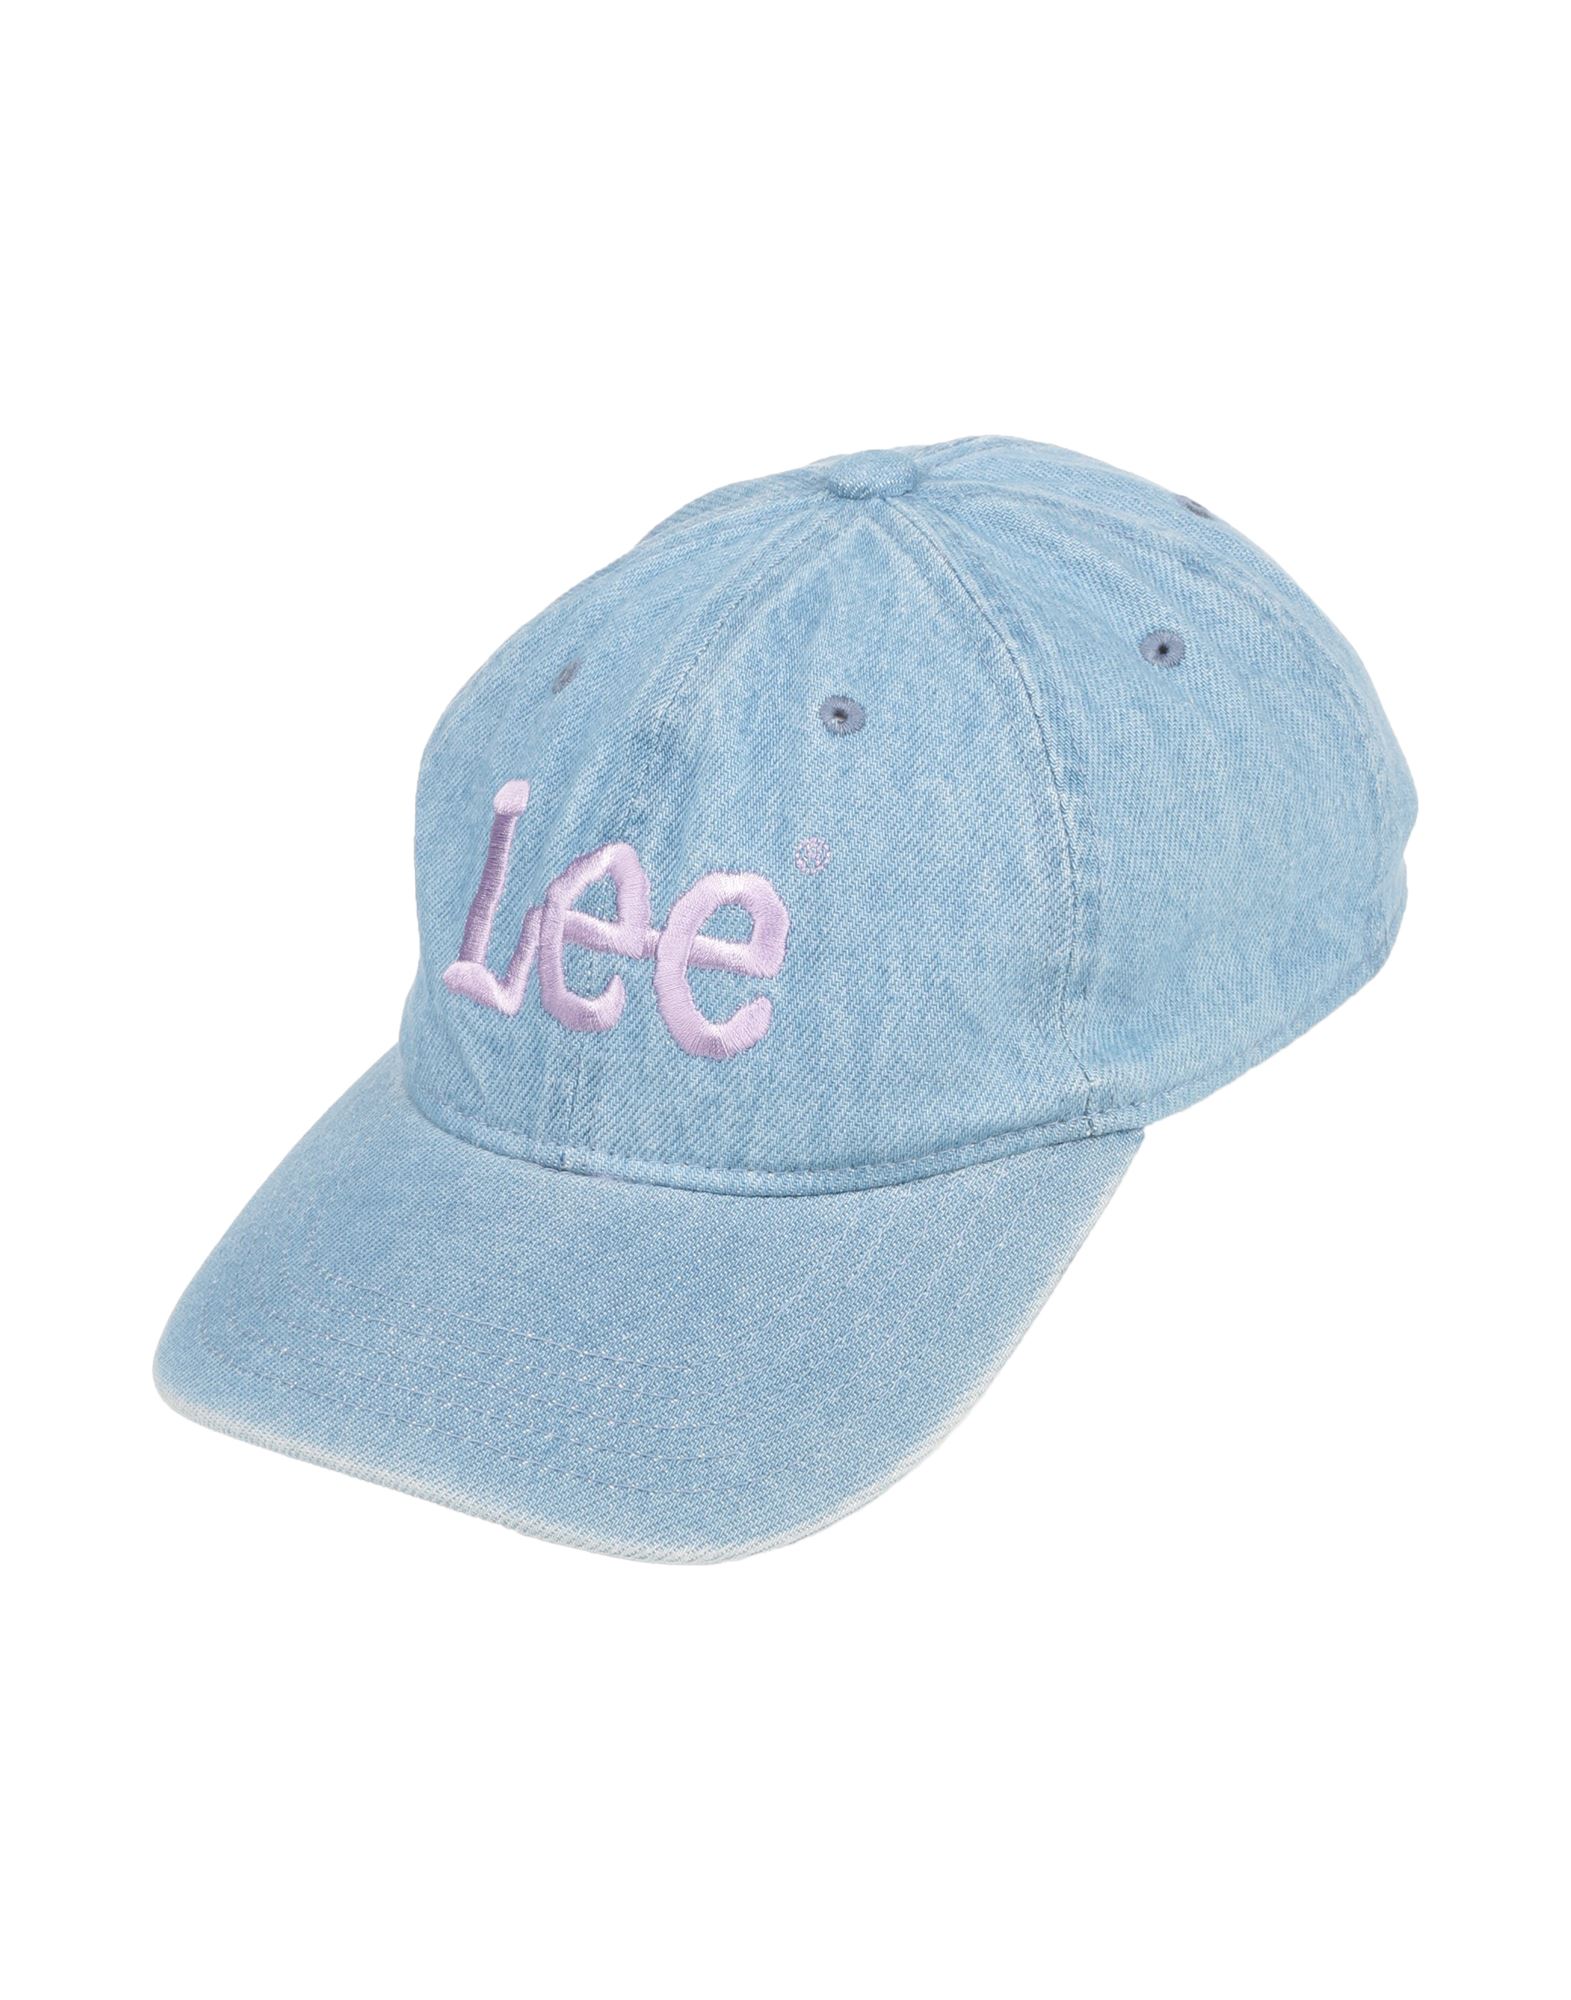 Lee Hats In Blue